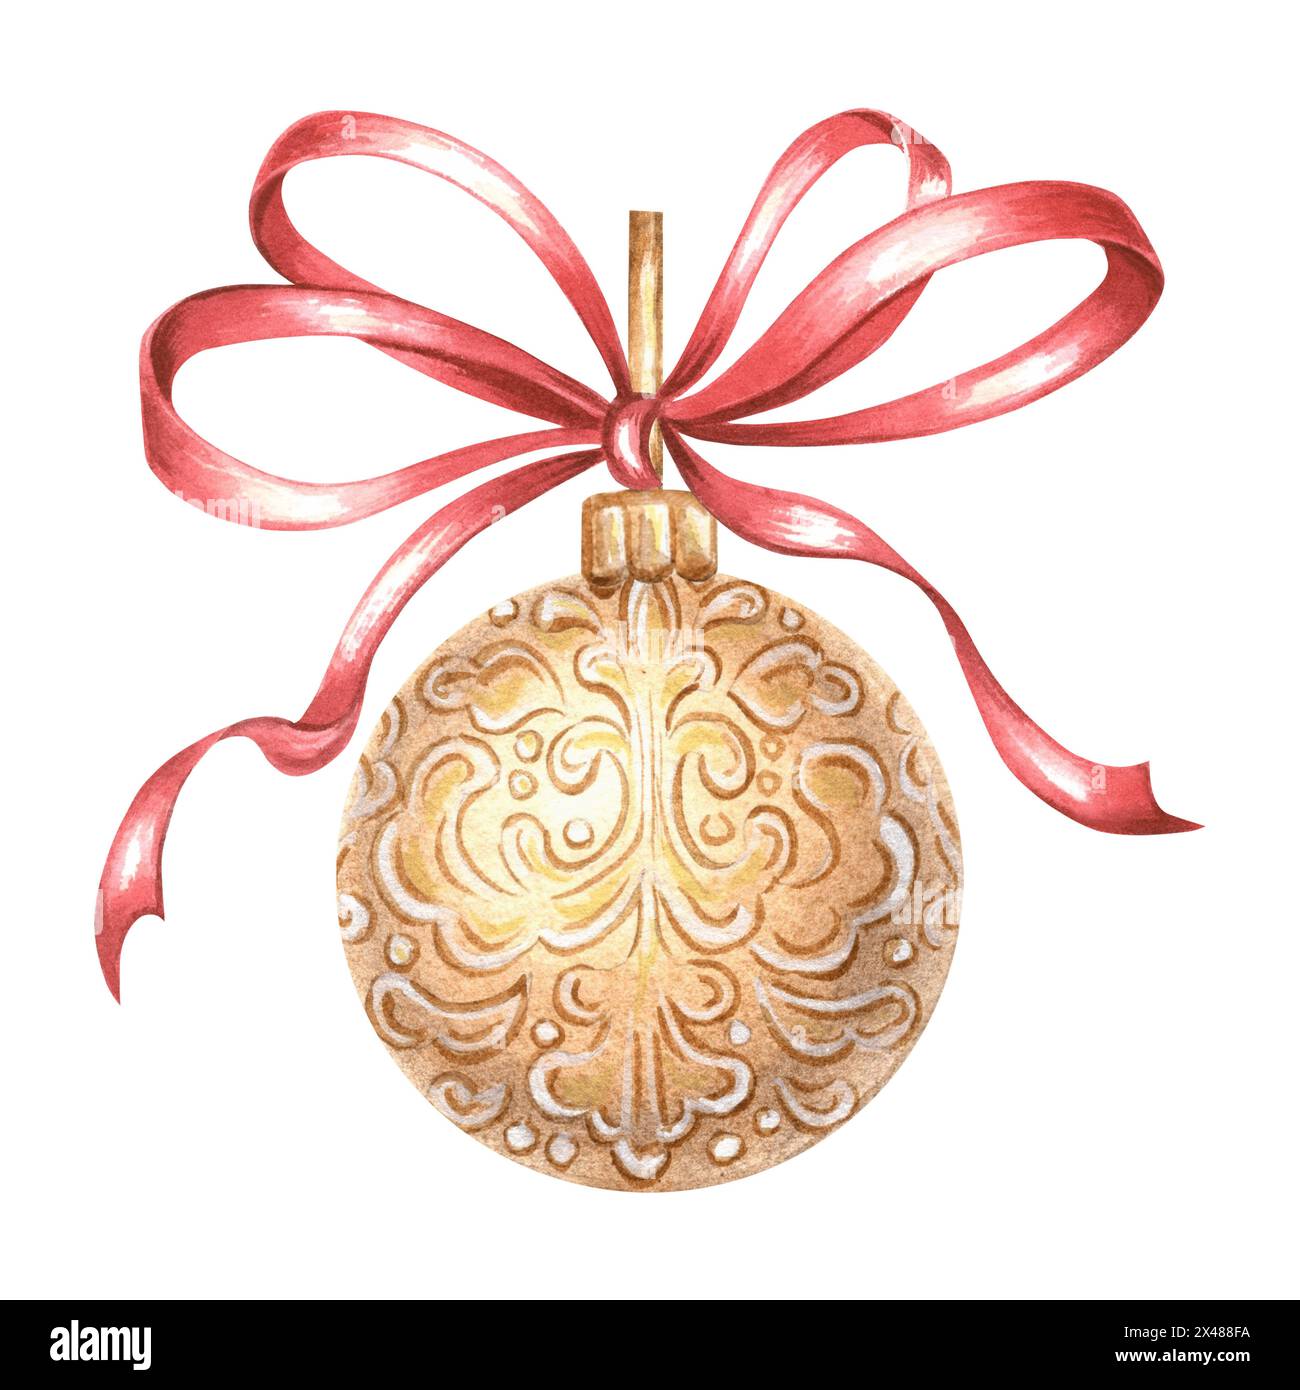 Weihnachtsbaumkugel Golden mit roter Seidenschleife. Zeichnen im Vintage-Stil. Handgezeichnete Aquarellillustration Weihnachtsdekoration. Isolierte Vorlage für Einladung Stockfoto